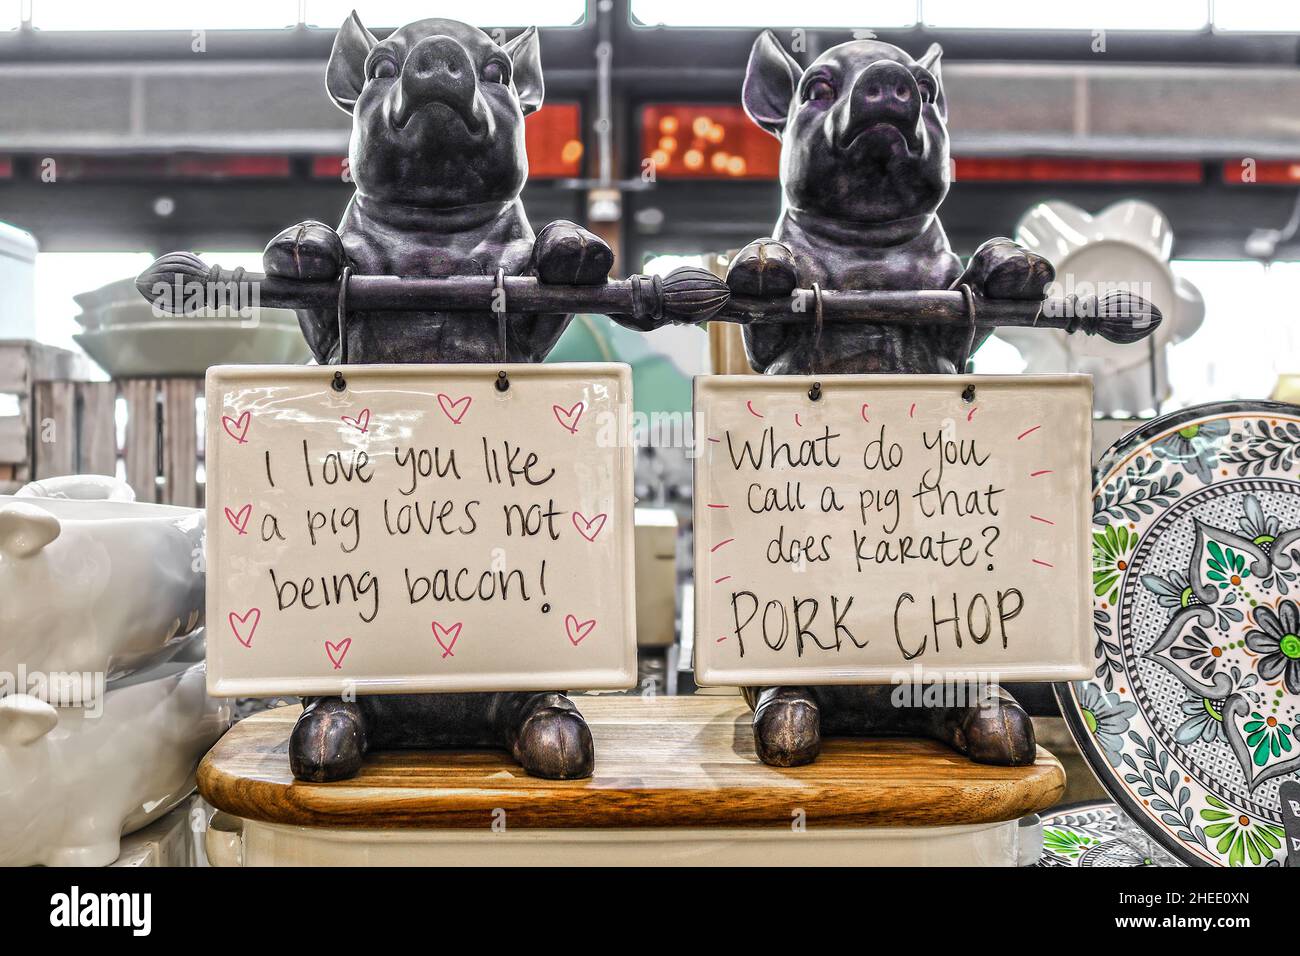 Porte-affiches de porc en fonte en démonstration - bacon et côtelettes de porc - humour - ustensiles de cuisine Banque D'Images